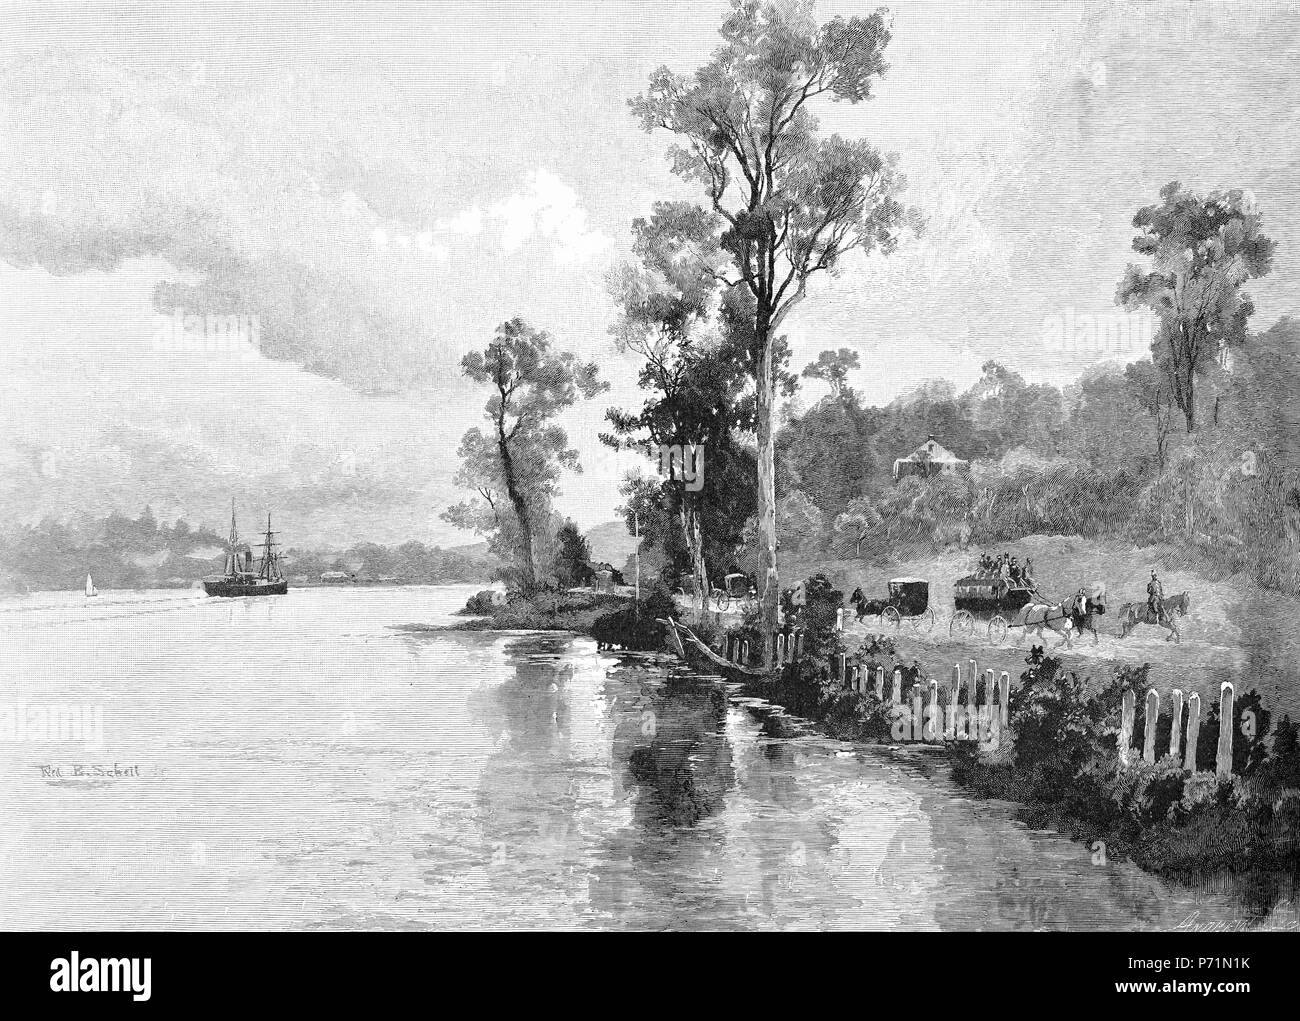 Gravure de Hamilton Reach sur la Rivière de Brisbane, Queensland, Australie, vers 1880. À partir de l'Atlas pittoresque d'Australasie Vol 2, 1886 Banque D'Images